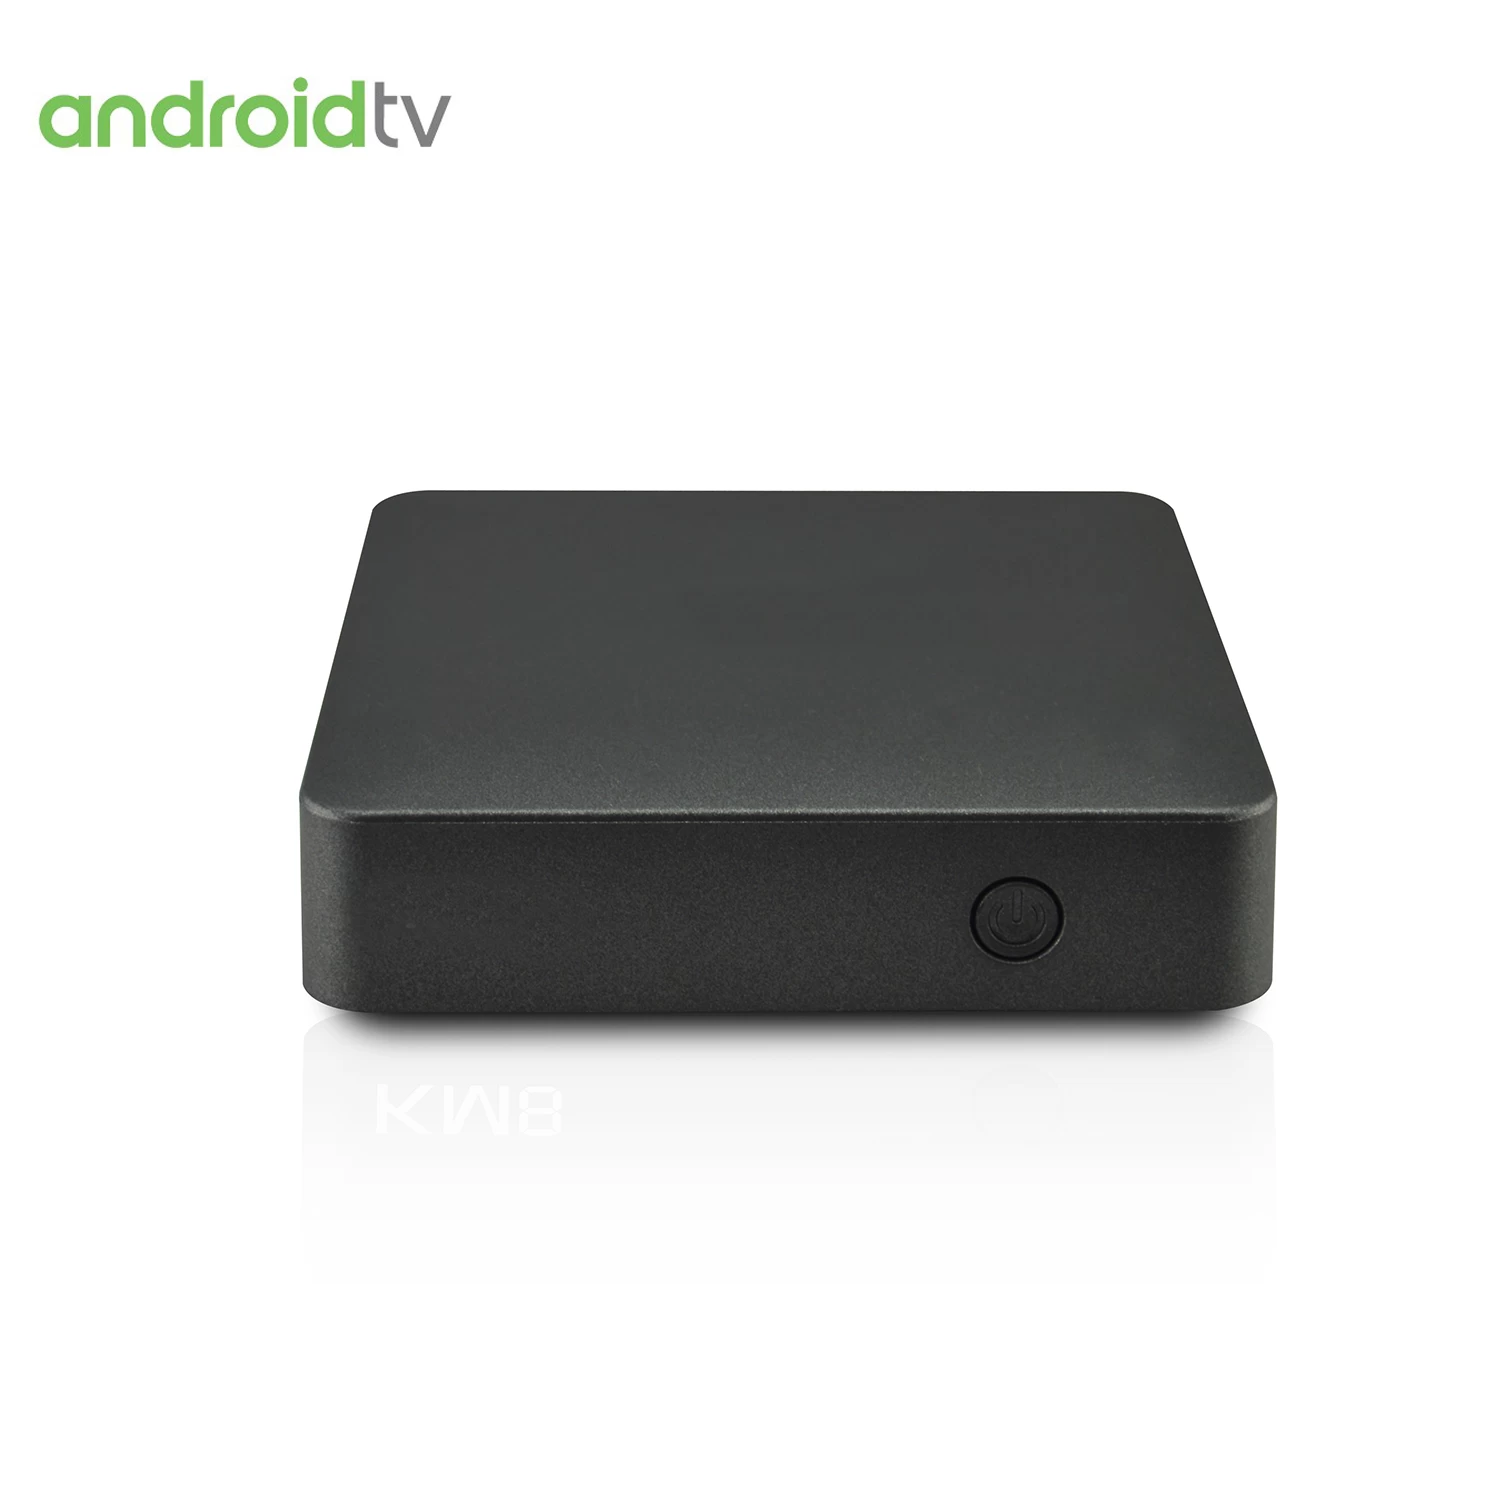 التحكم الصوتي من مساعد Google قادم إلى Android TV